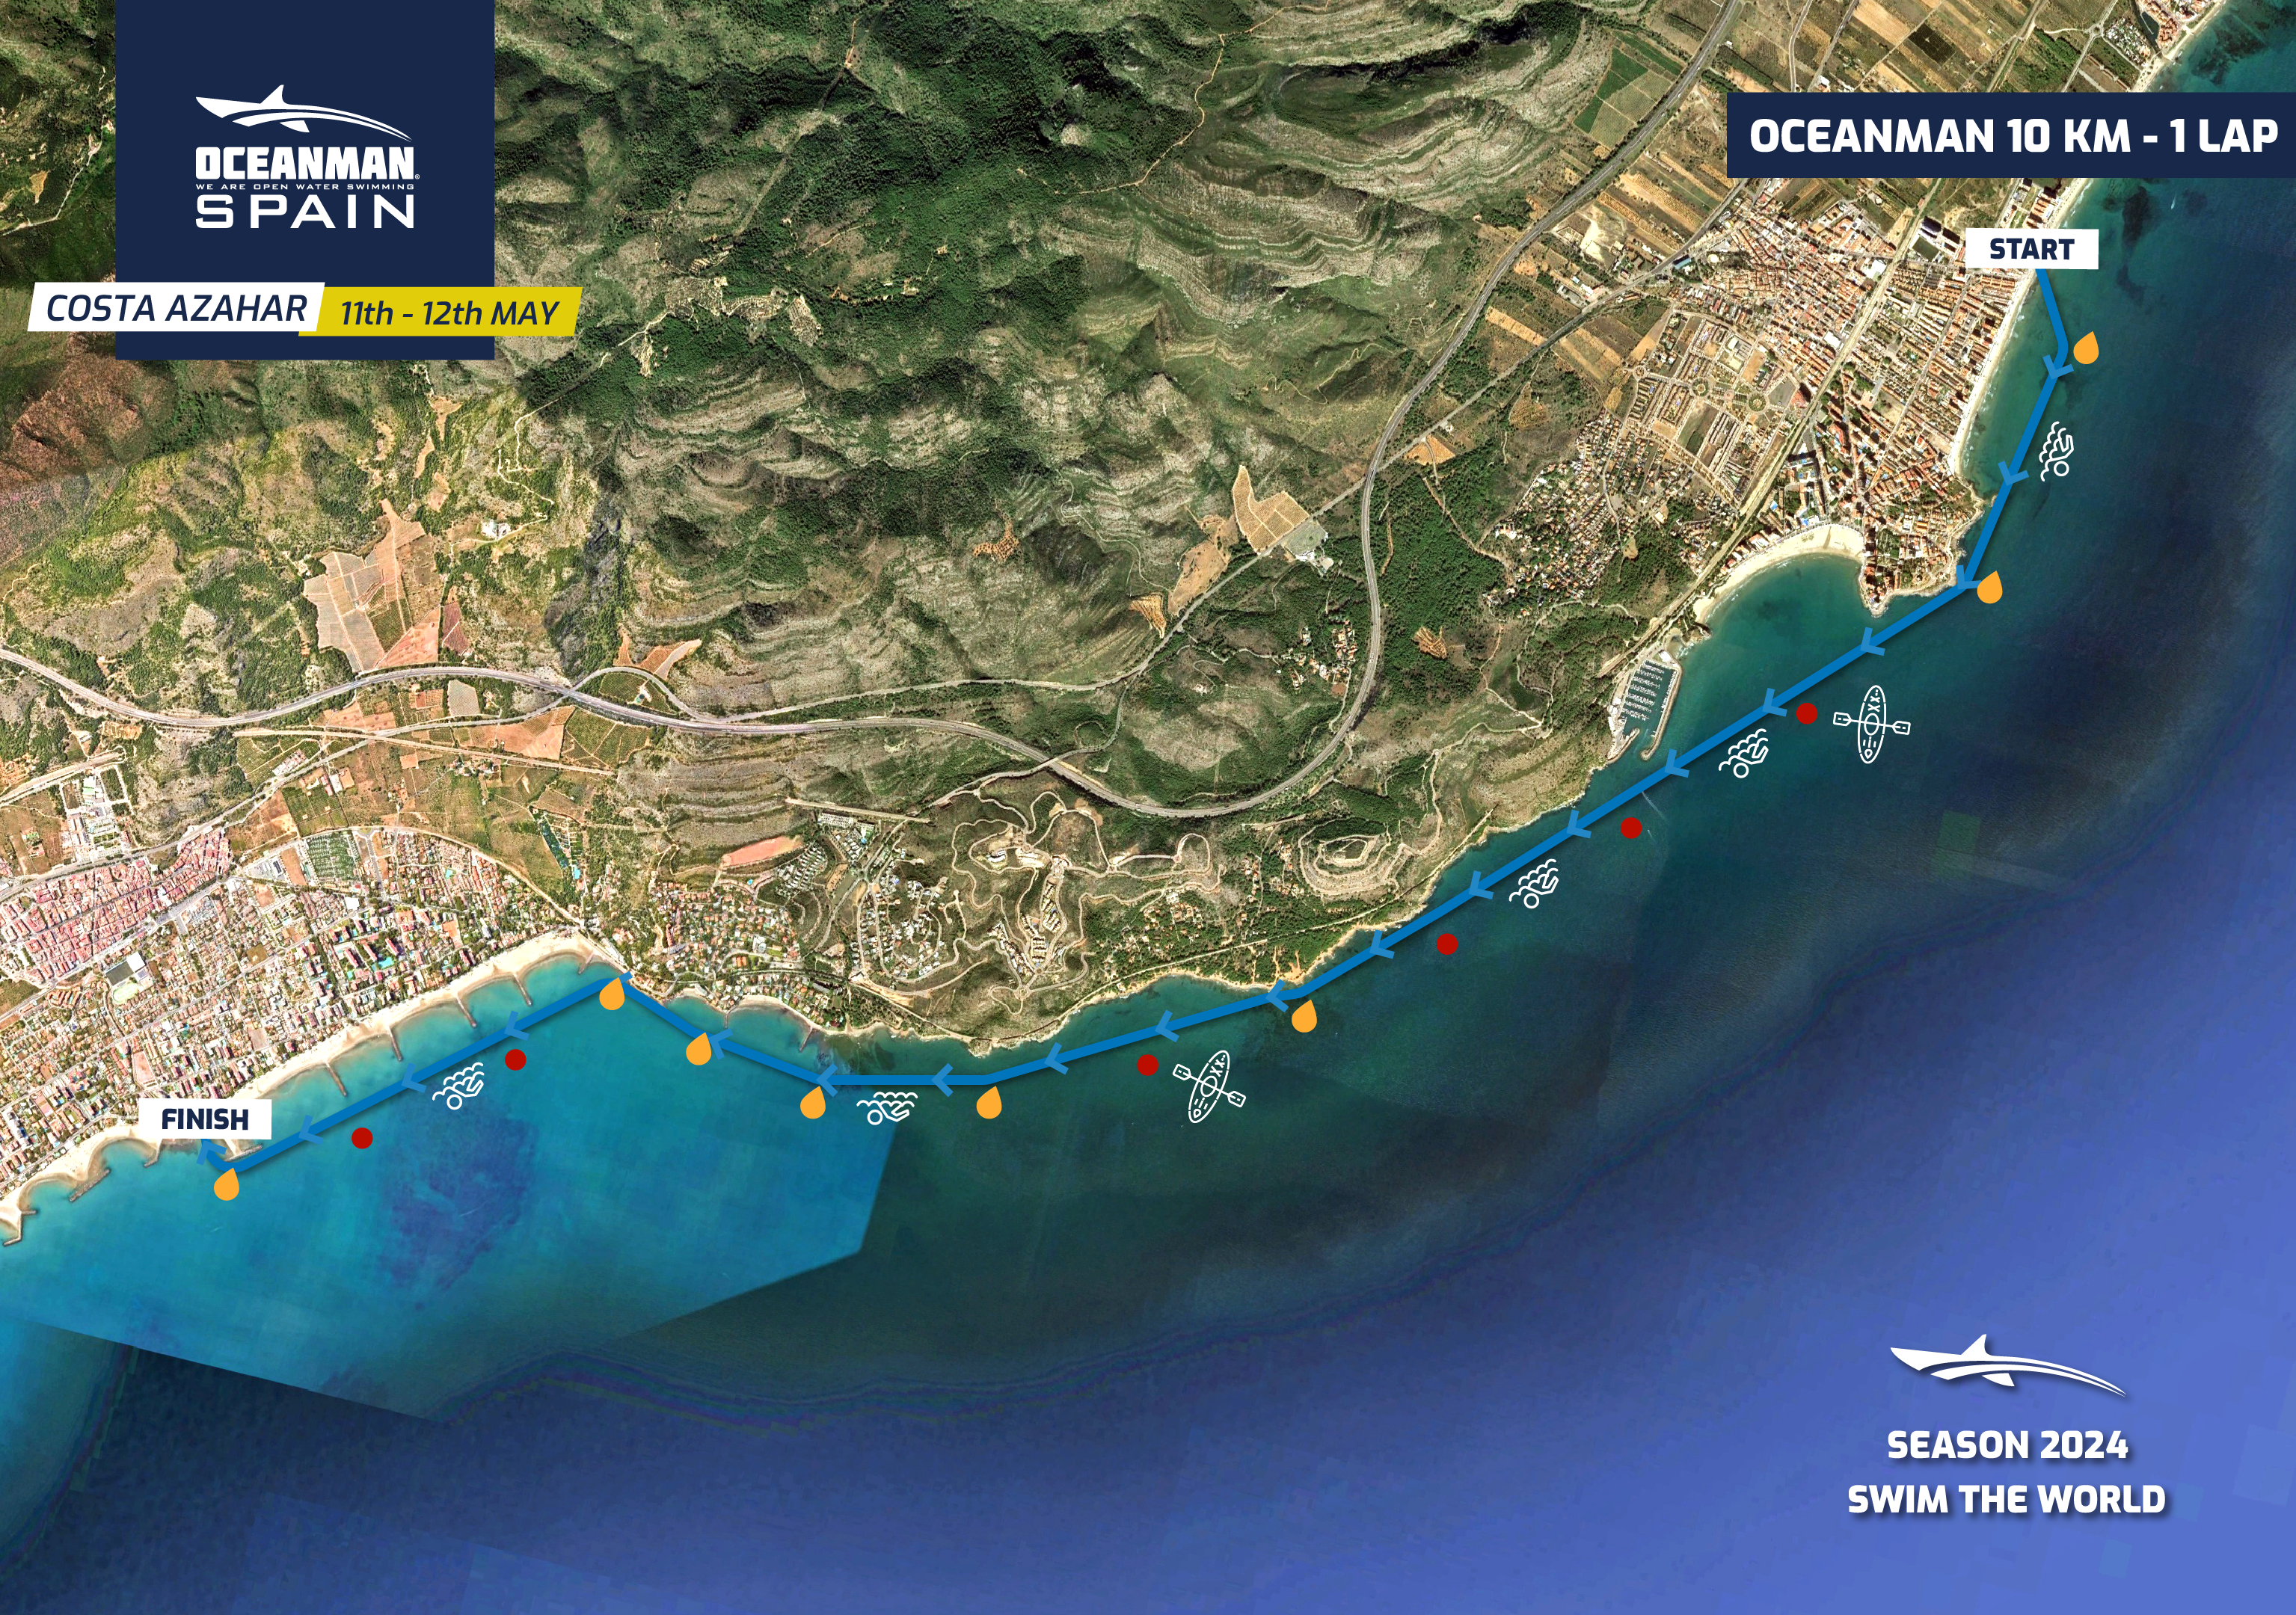 Oceanman_Costa Azahar - Oceanman 10 km